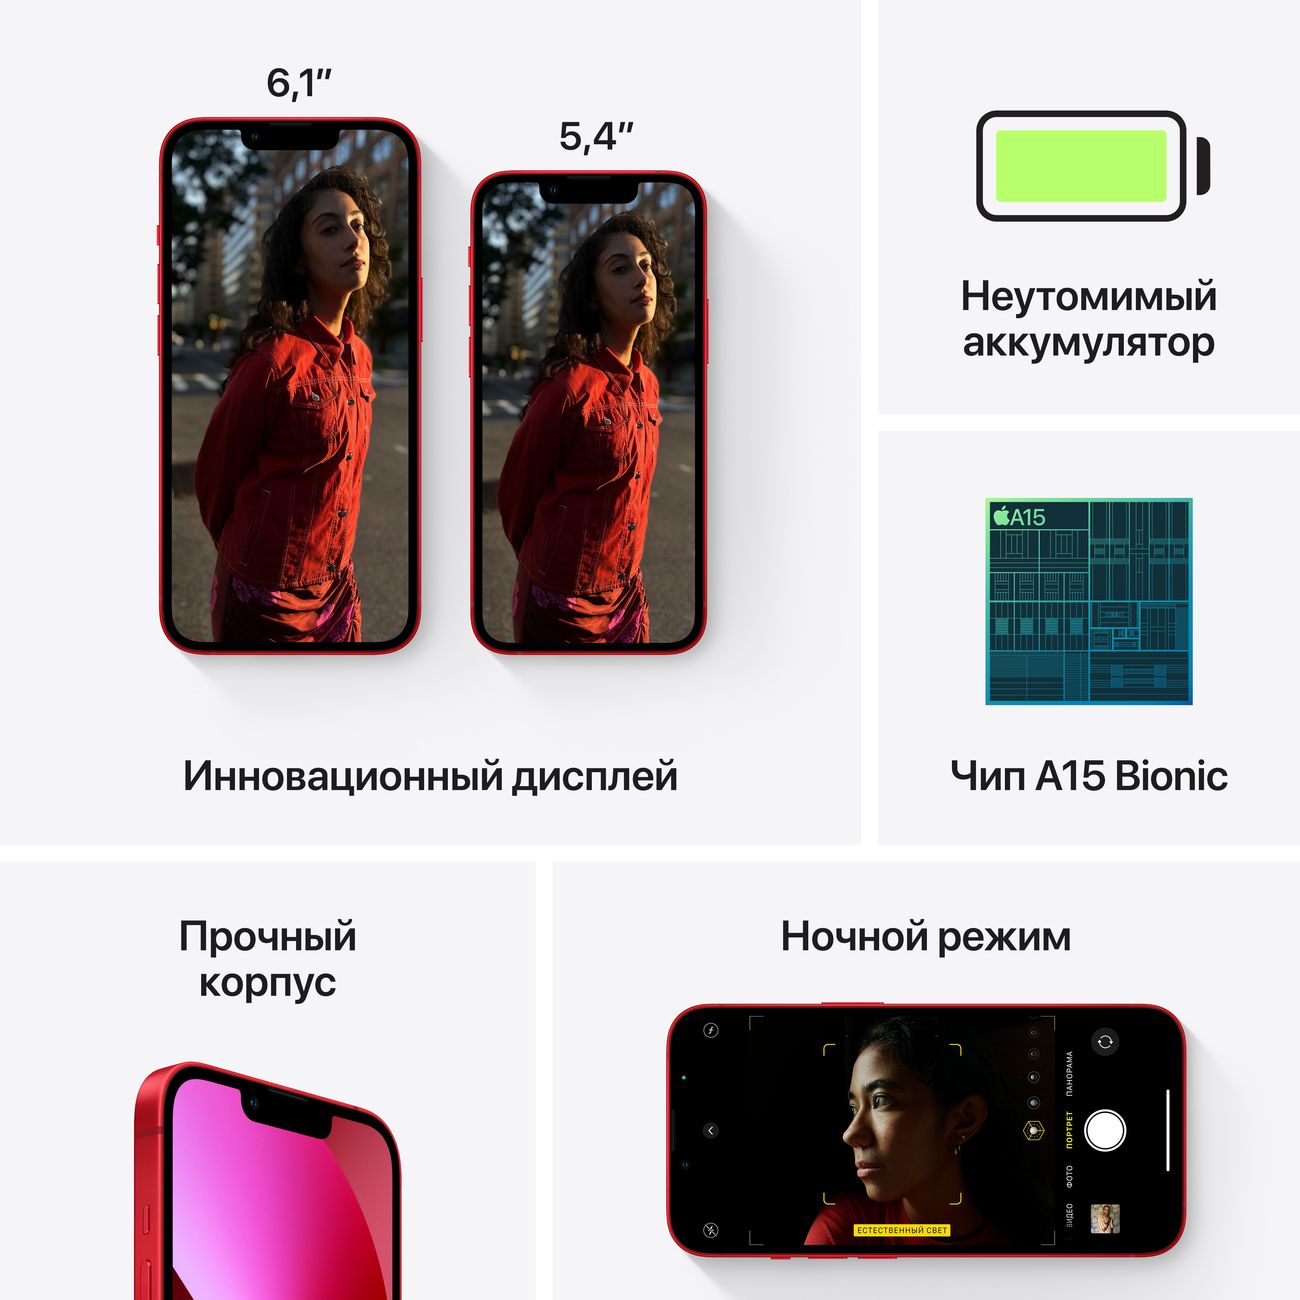 Купить смартфон apple iphone 13 512gb midnight Apple iPhone 13 в официальном магазине Apple, Samsung, Xiaomi. iPixel.ru Купить, заказ, кредит, рассрочка, отзывы,  характеристики, цена,  фотографии, в подарок.